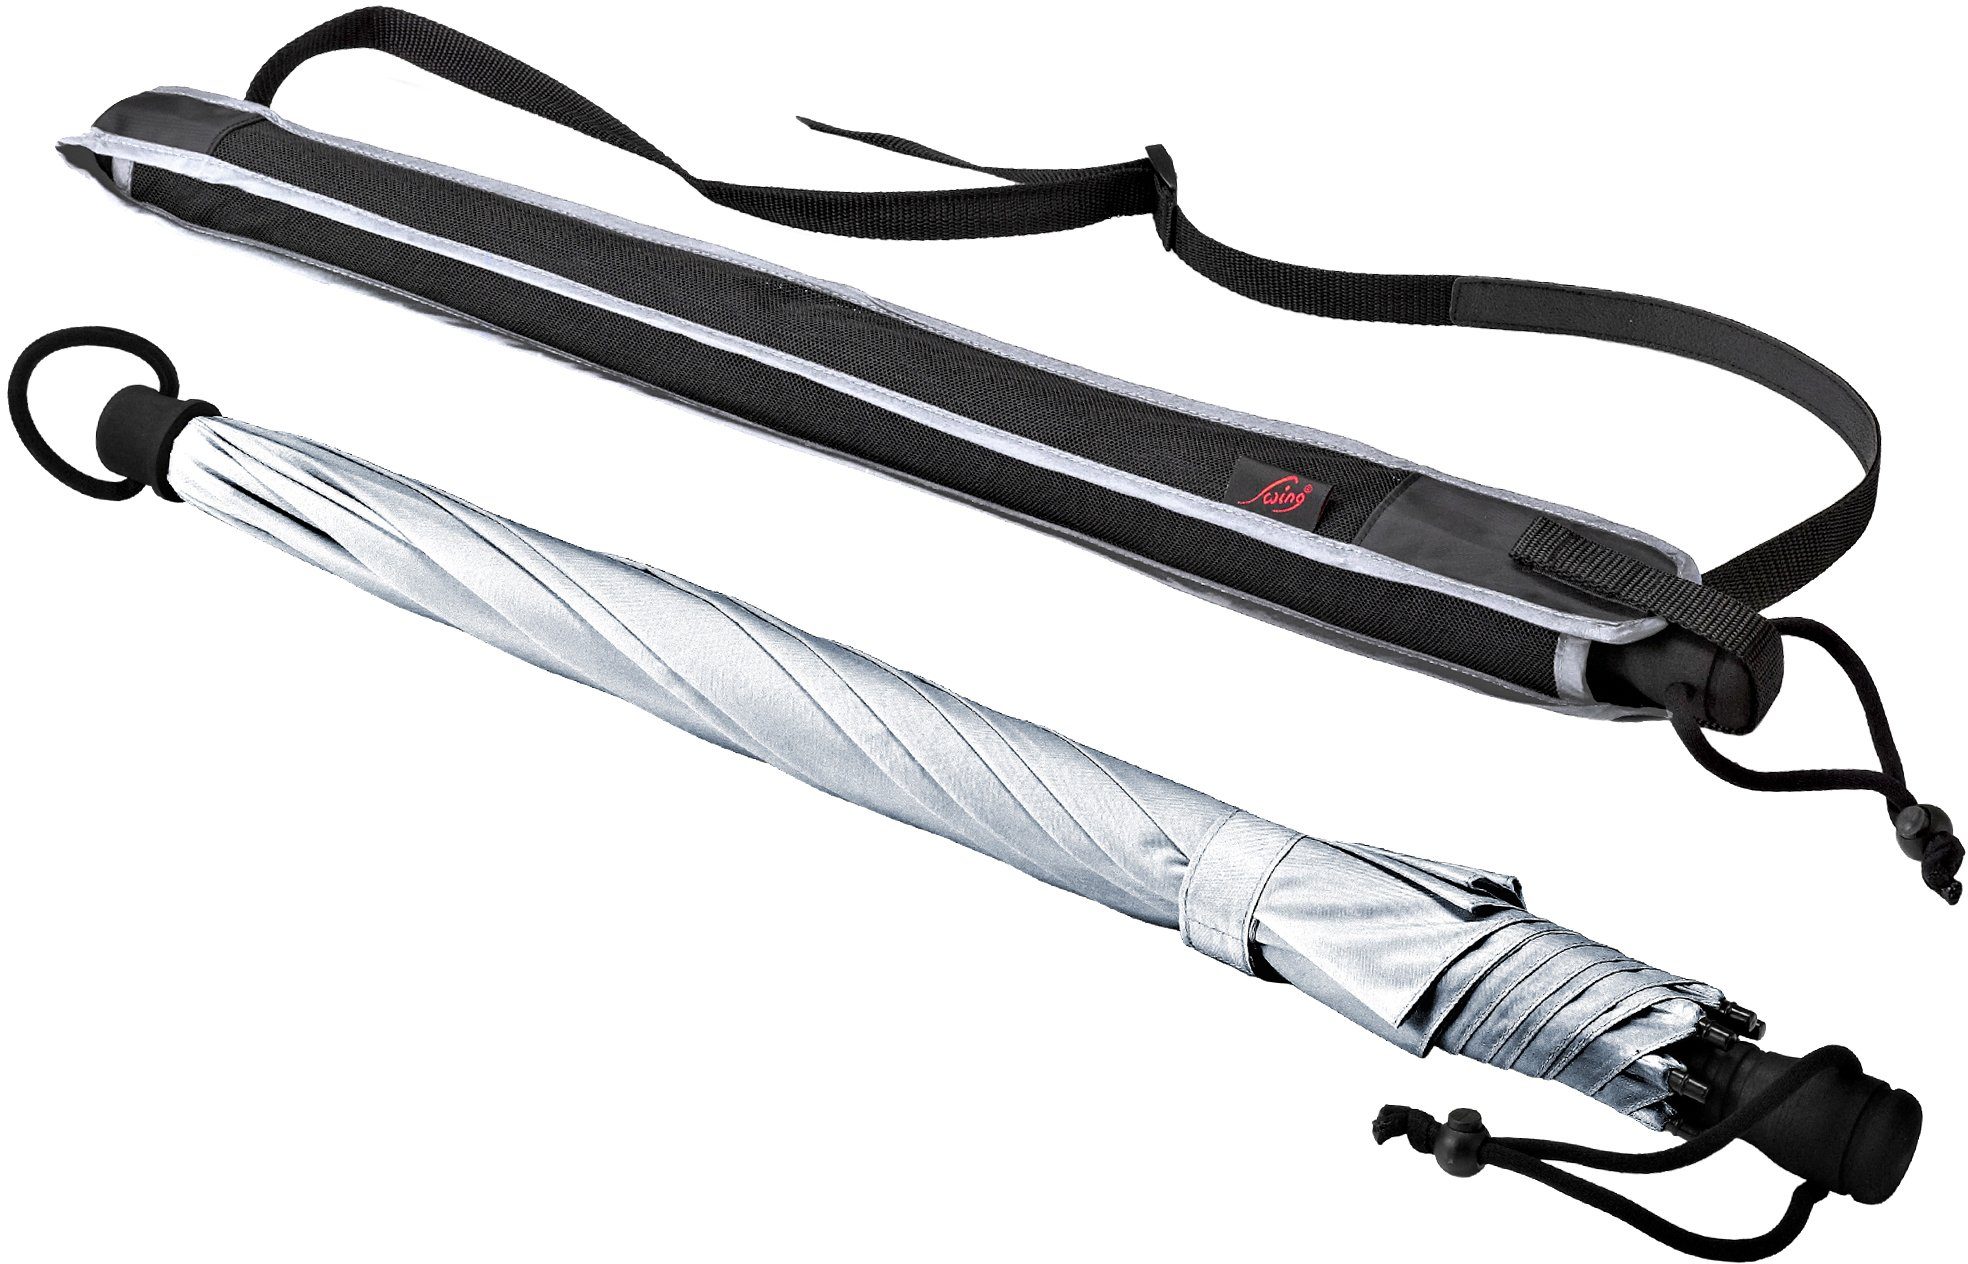 Stockregenschirm mit UV-Lichtschutzfaktor EuroSCHIRM® Swing, silber, 50+